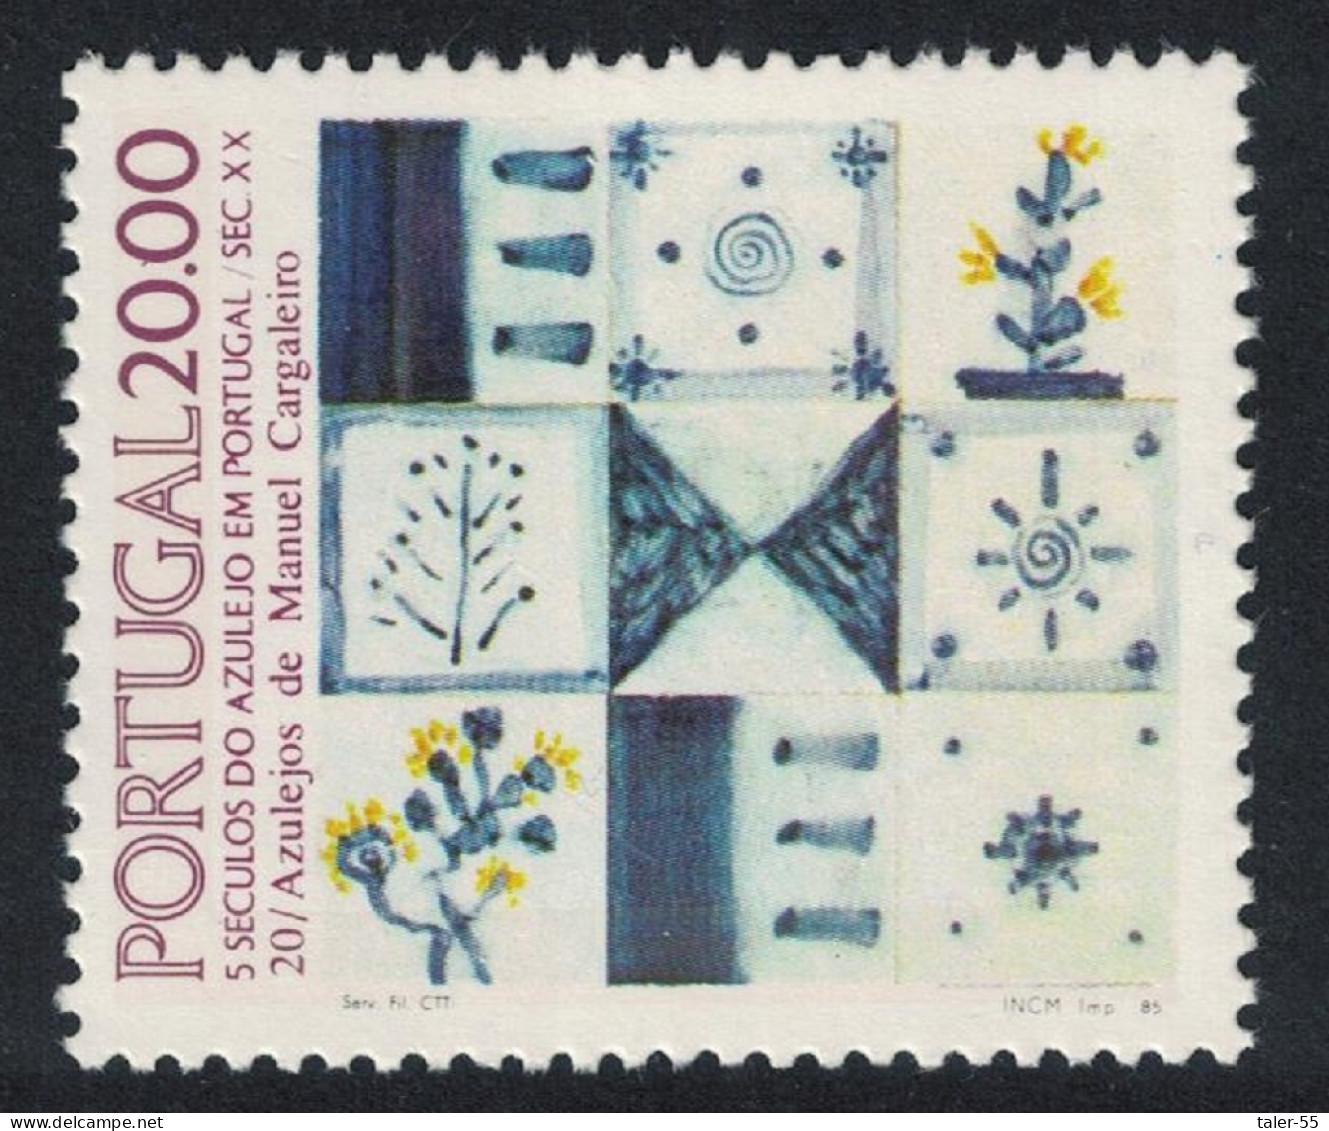 Portugal Tiles 20th Series 1985 MNH SG#2031 - Ungebraucht